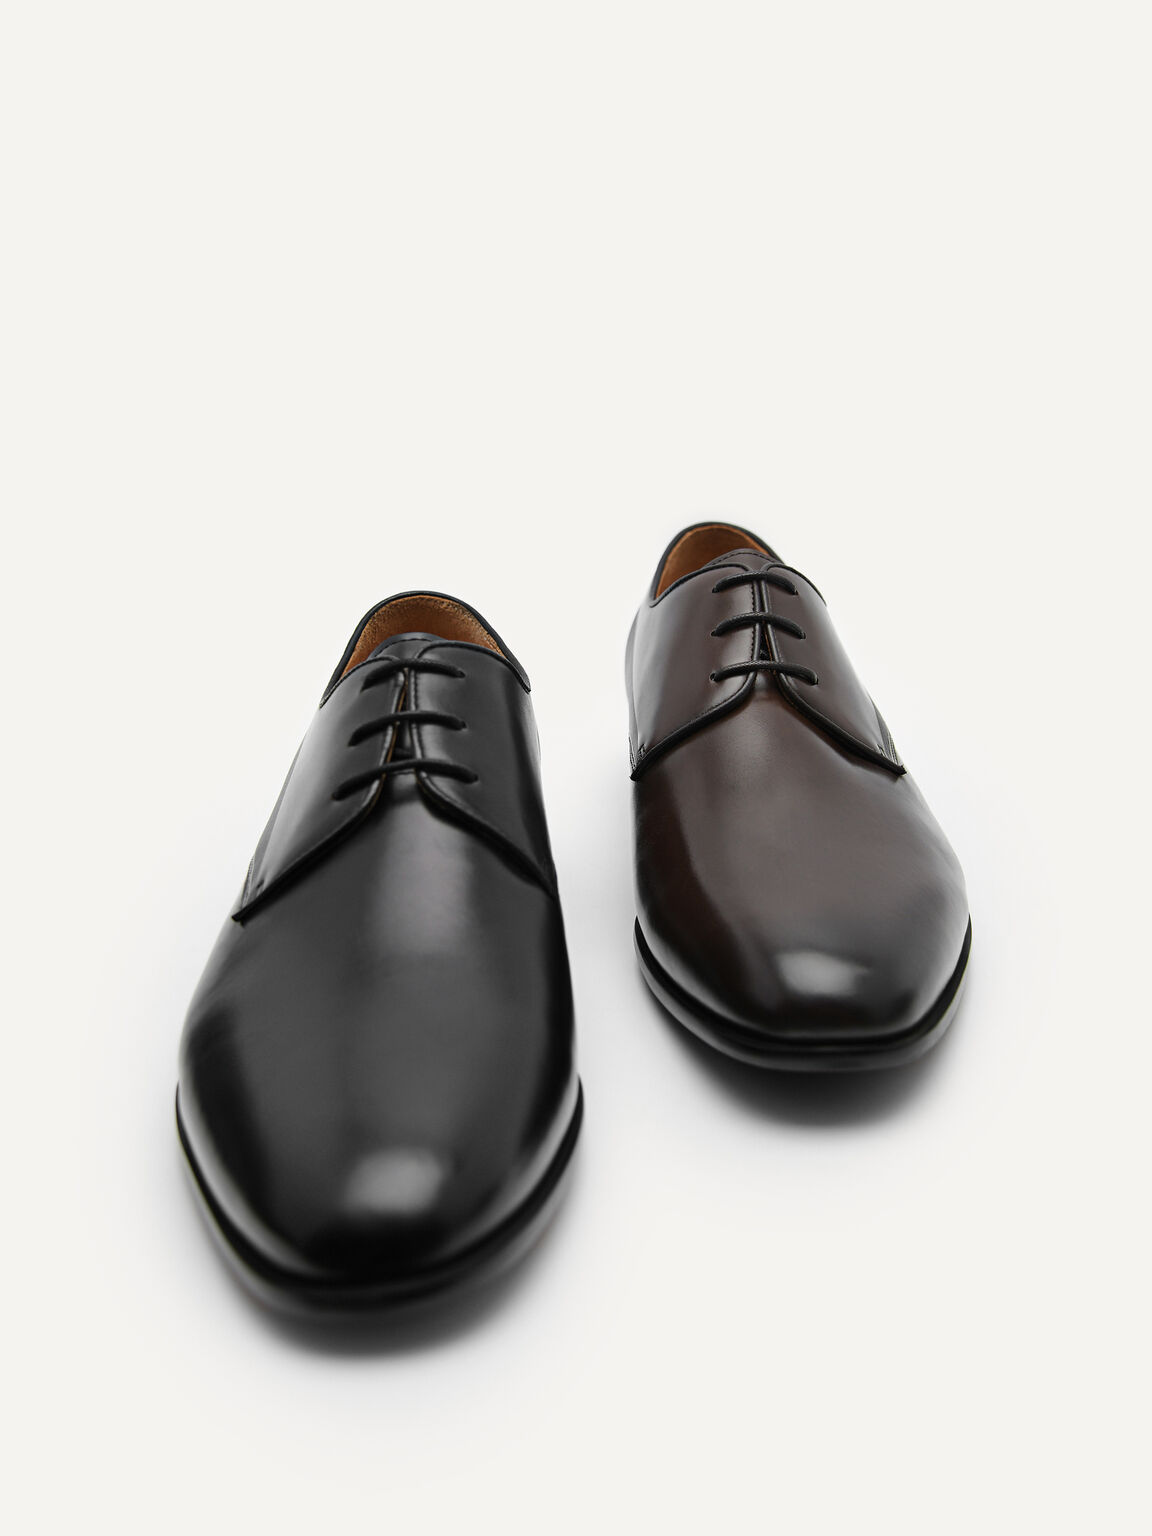 Harisson Leather Derby Shoes, Dark Brown